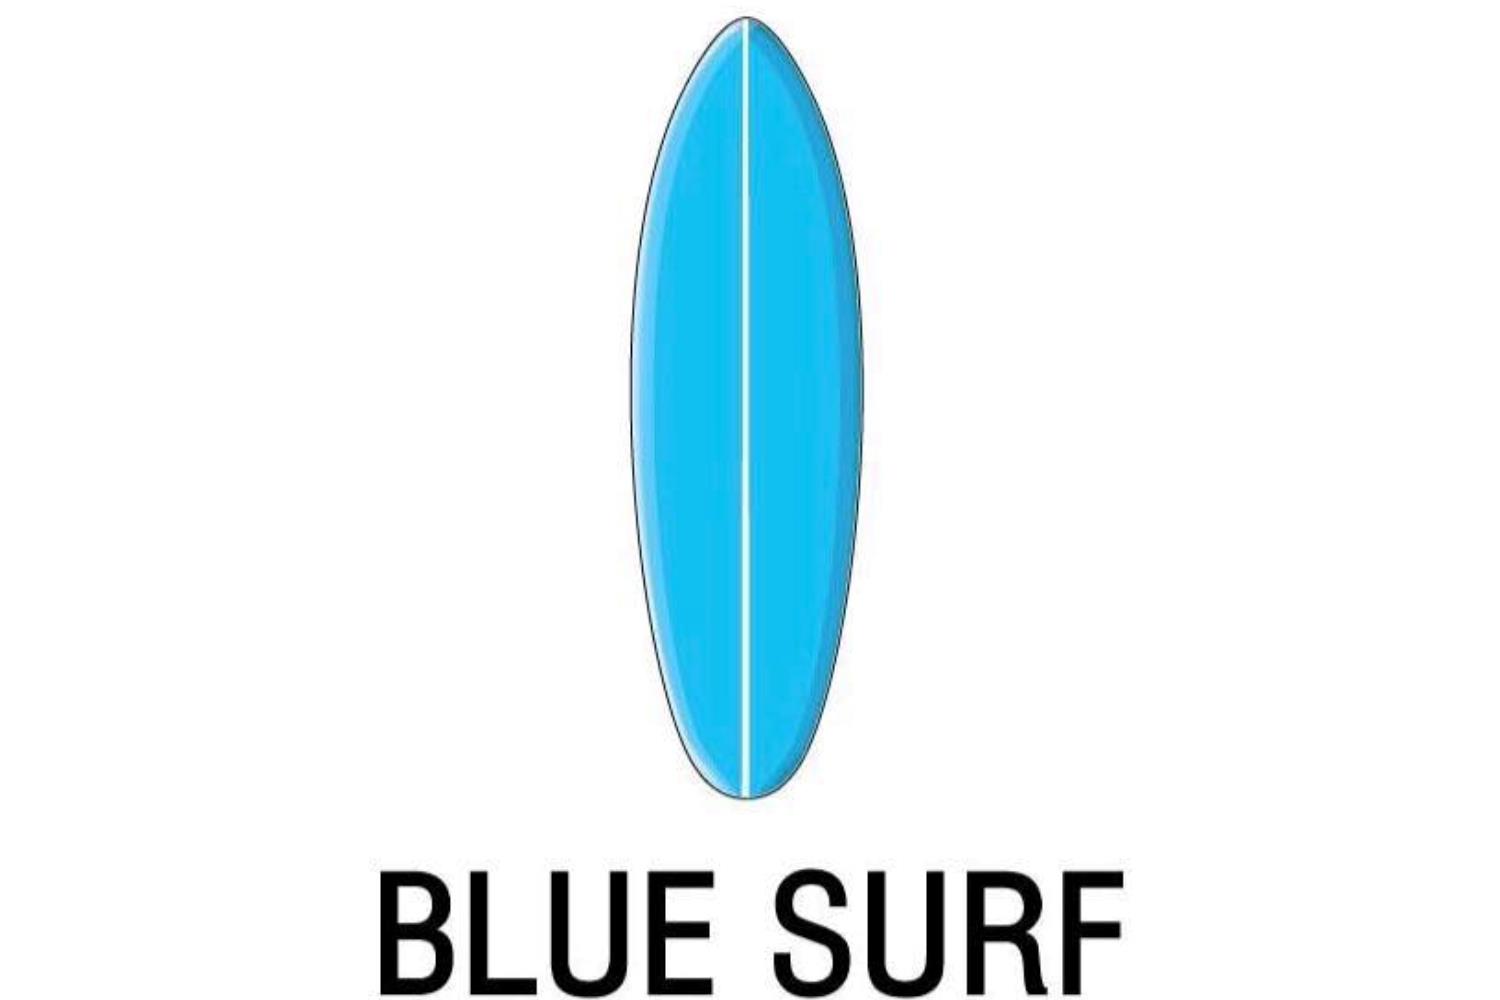 Blue surf cafe